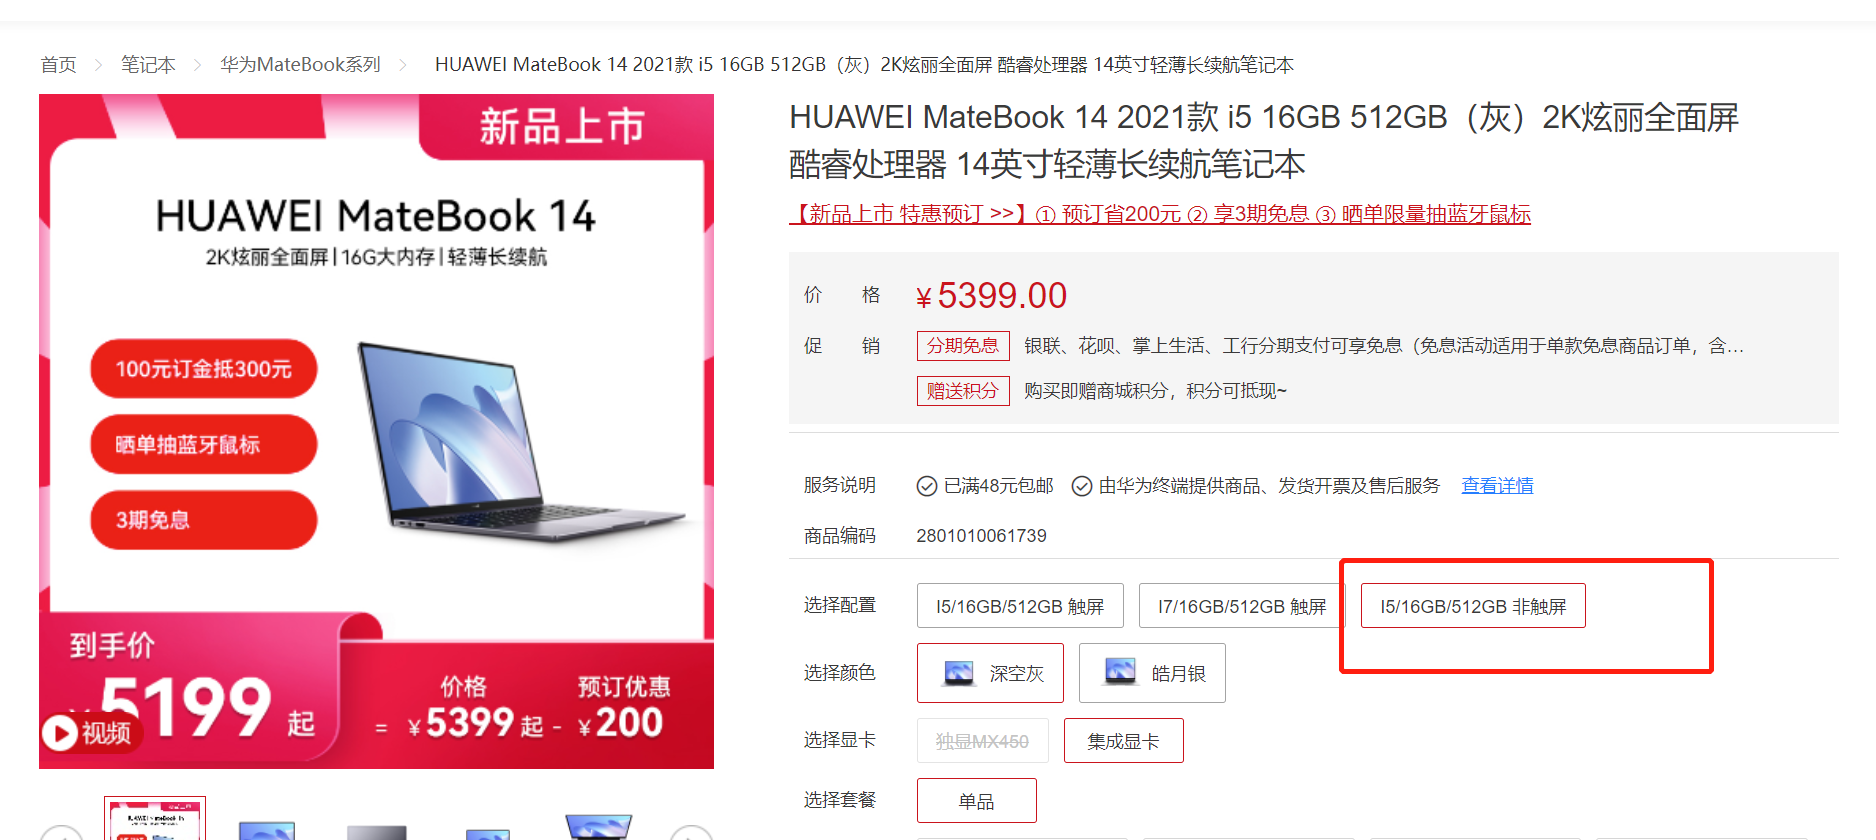 取消触控屏最高便宜500 华为MateBook 14 5399元预售